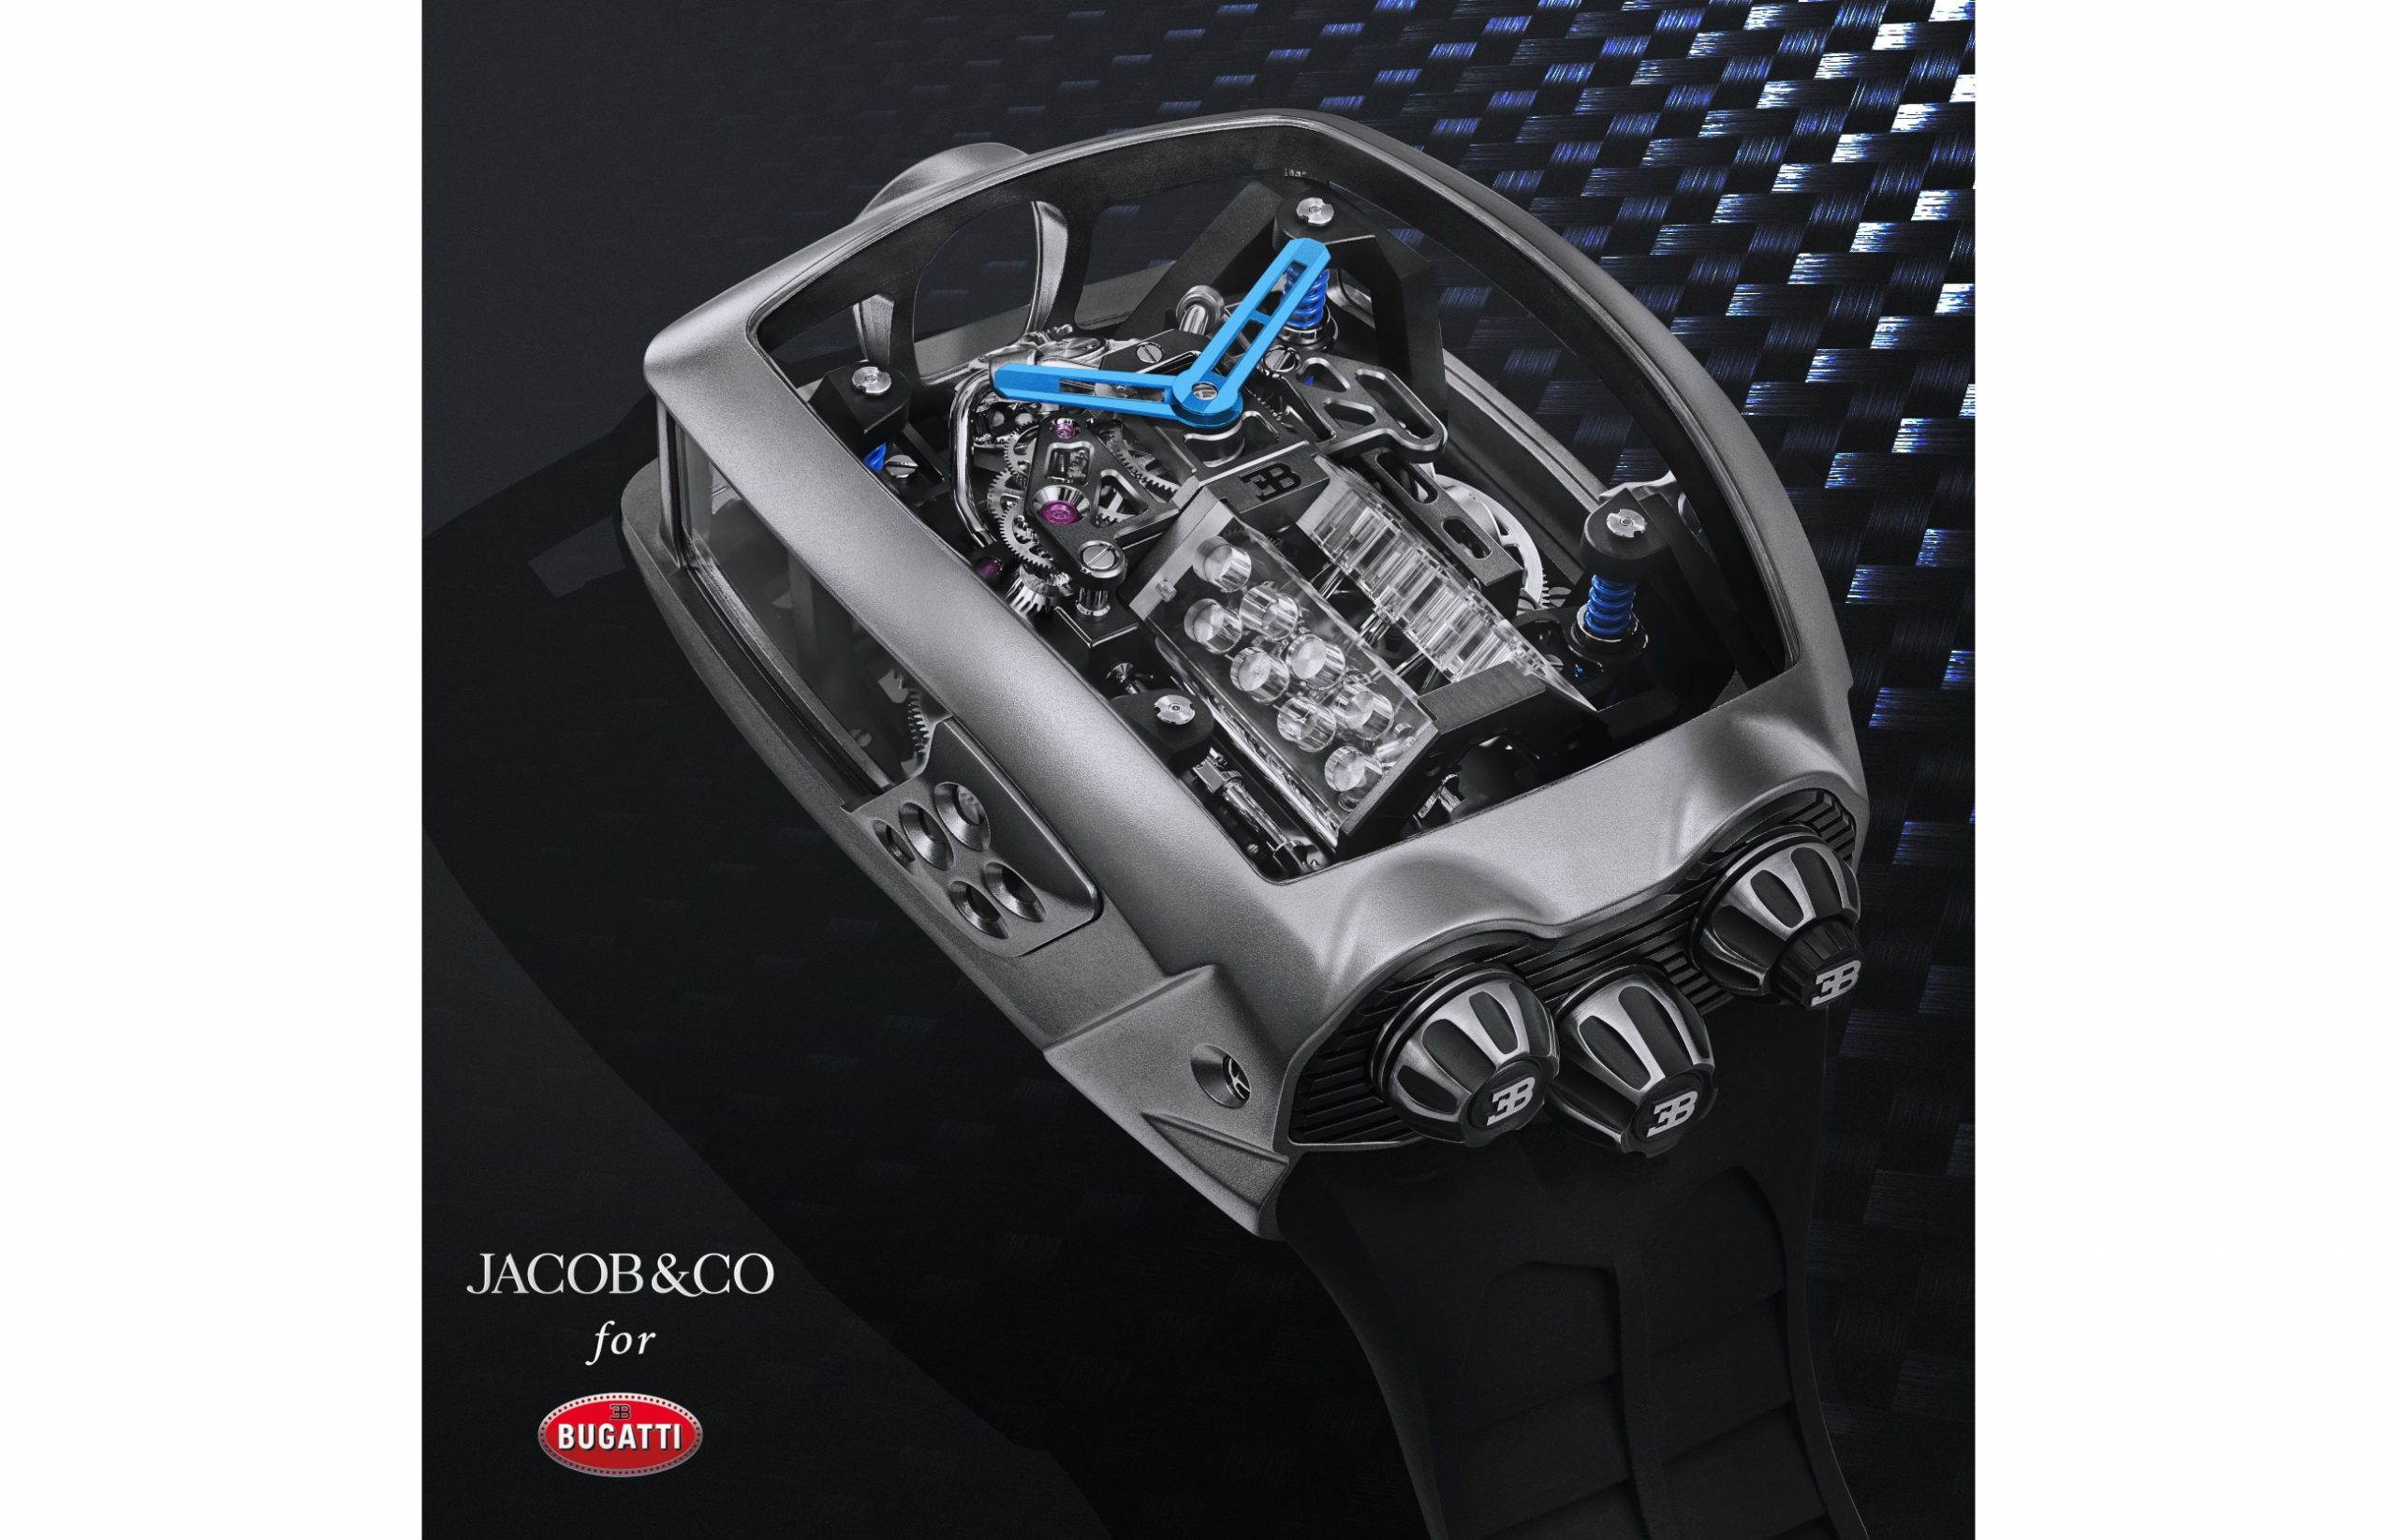 Jacob & Co. Unveils $280,000 Bugatti Chiron Tourbillon